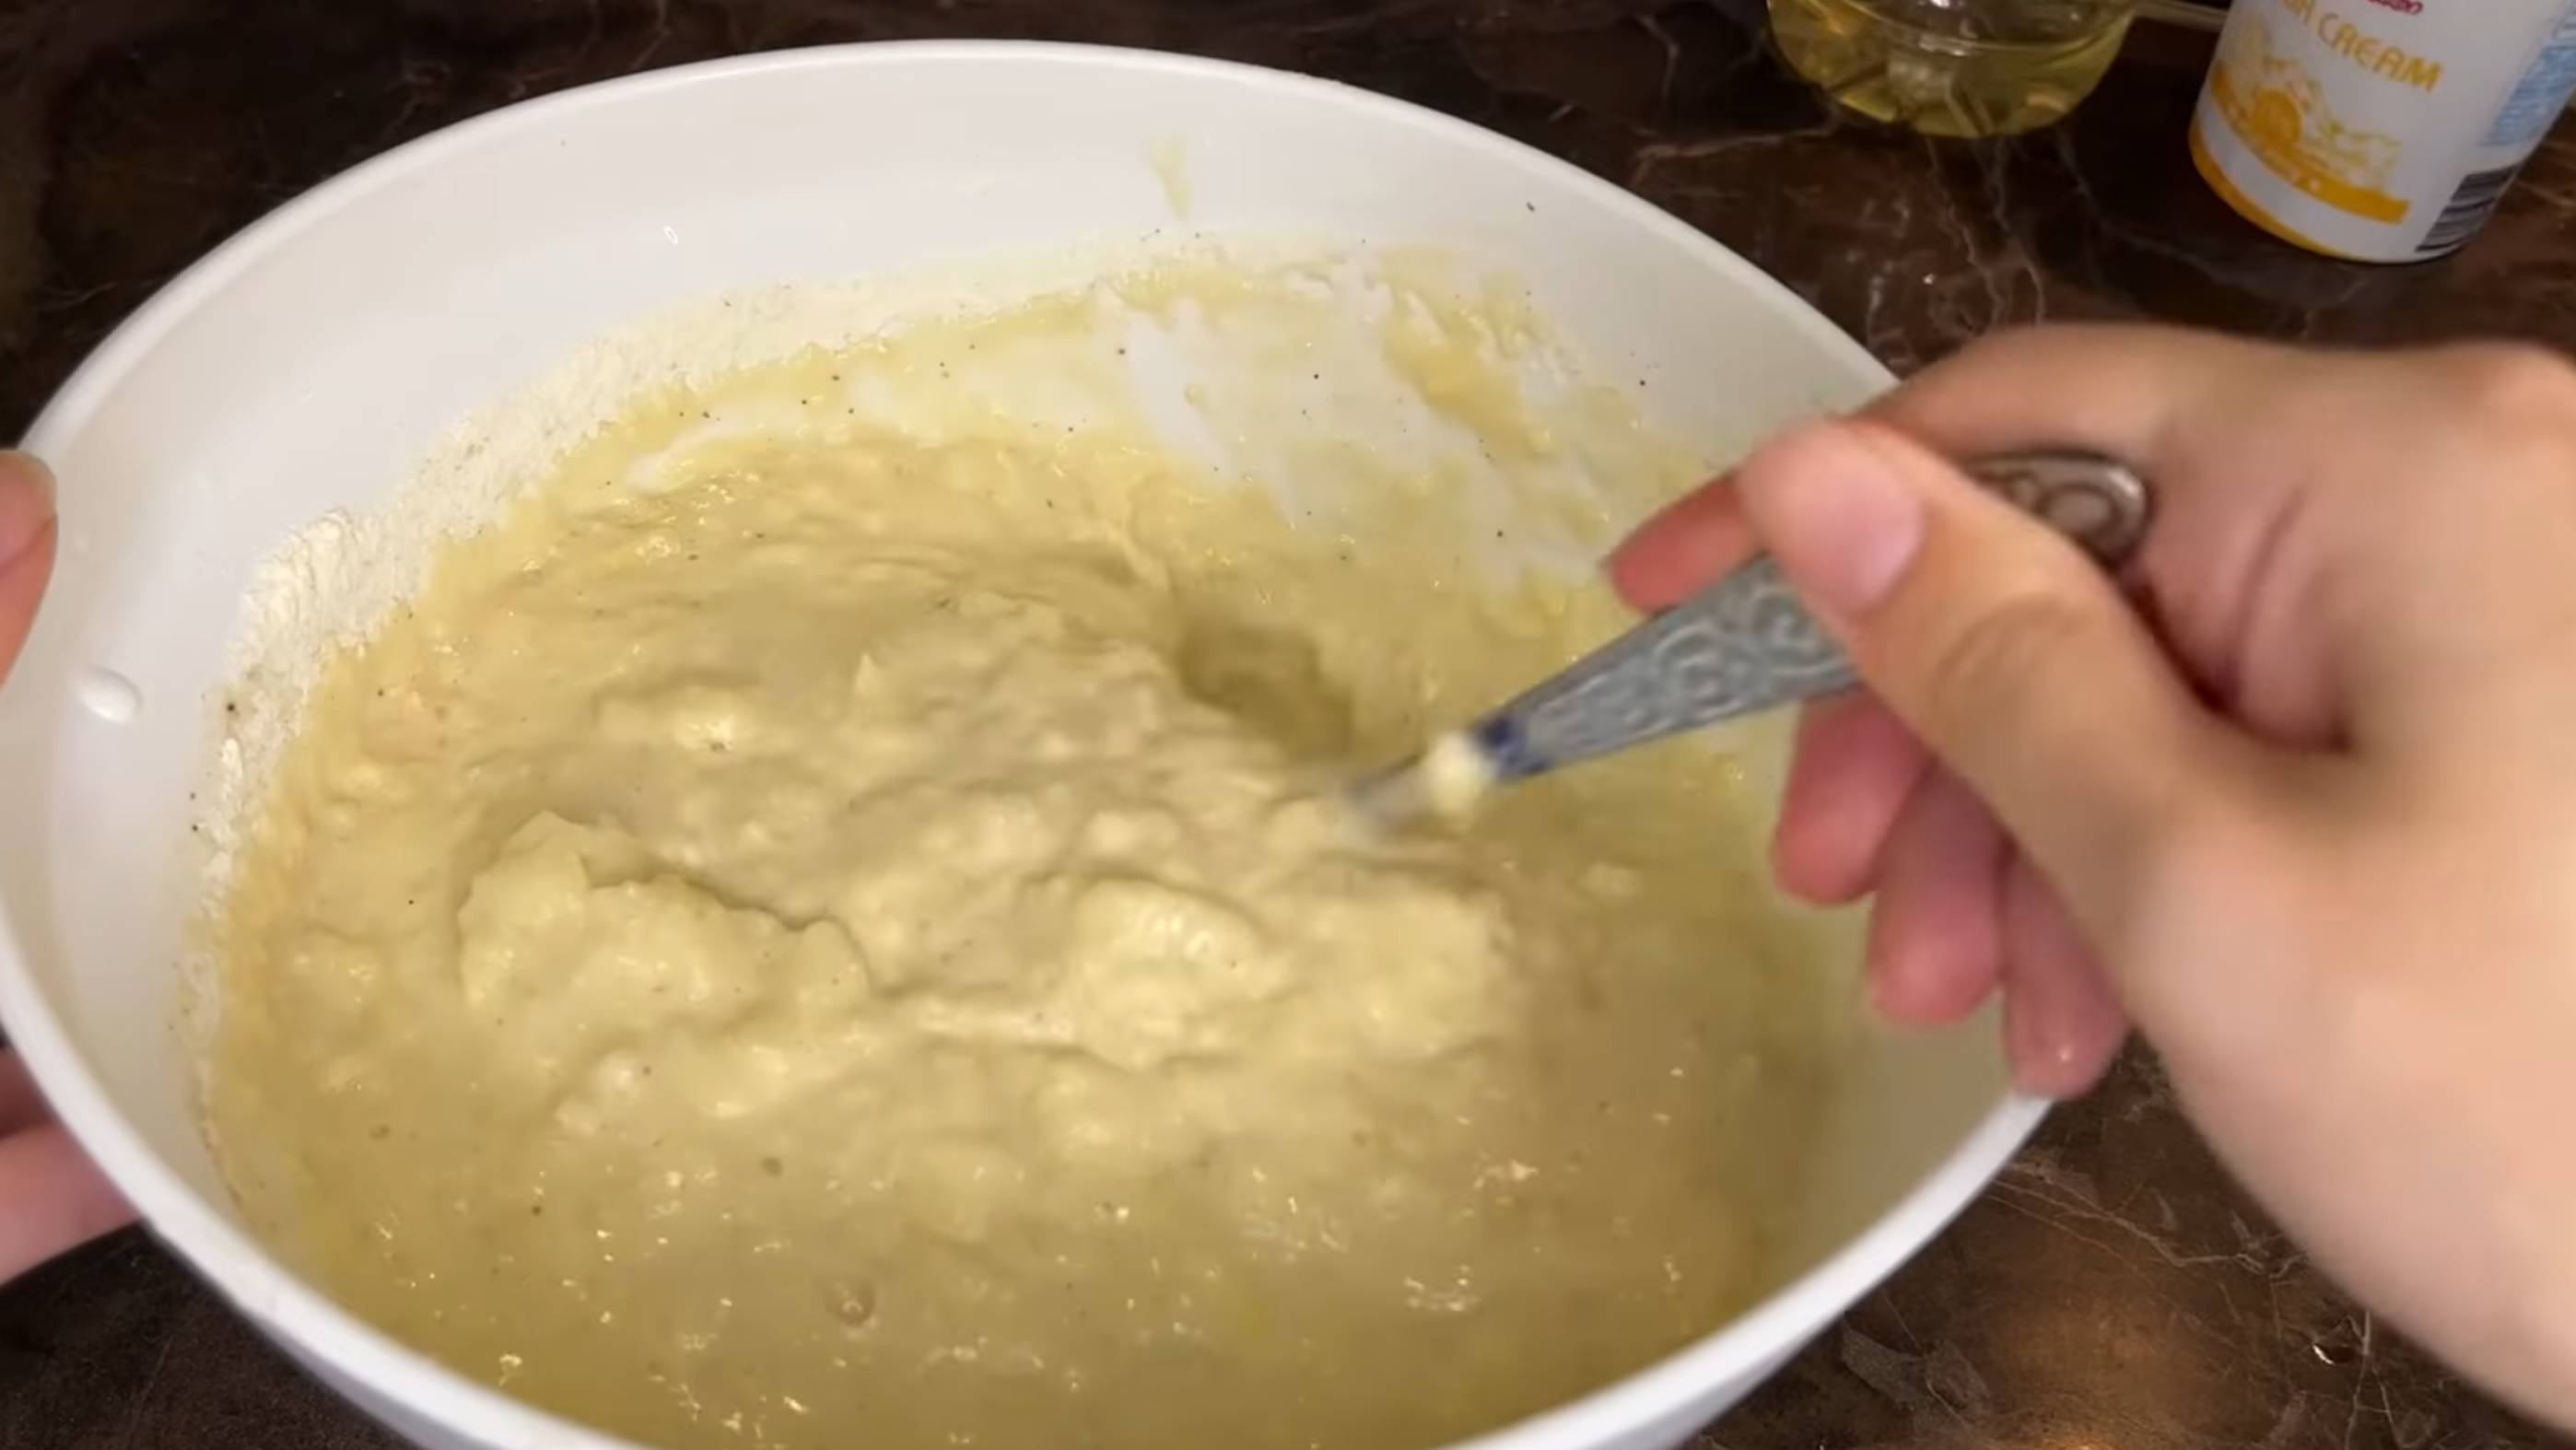 Кулінари поділились рецептом, як приготувати картопляні млинці. Фото з Youtube-каналу @food_traveltv